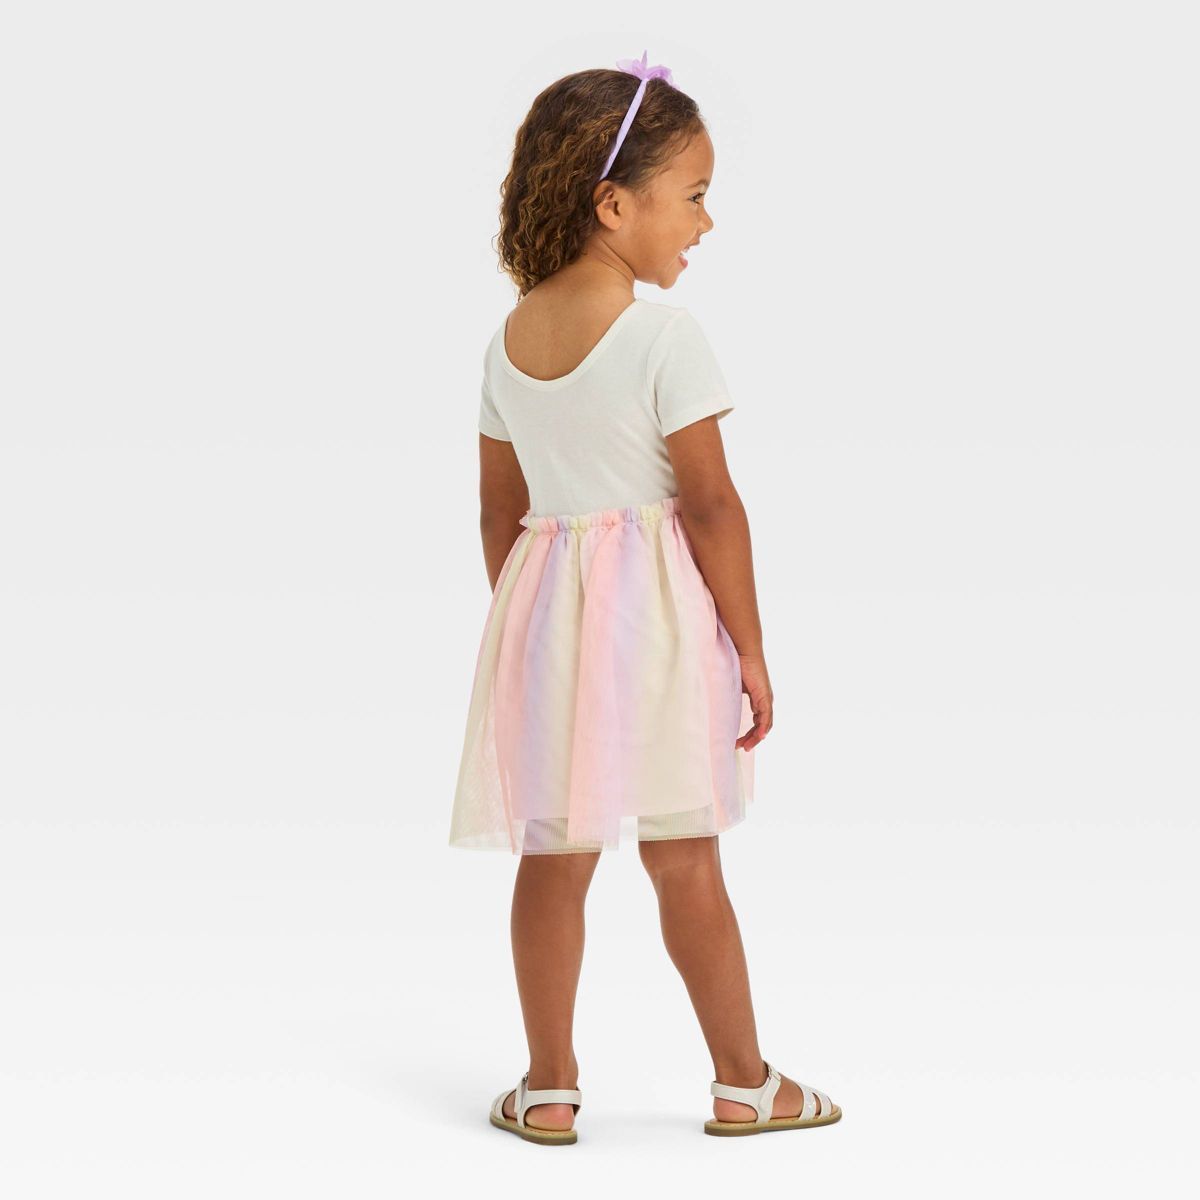 Toddler Girls' Heart Tulle Dress - Cat & Jack™ Cream | Target